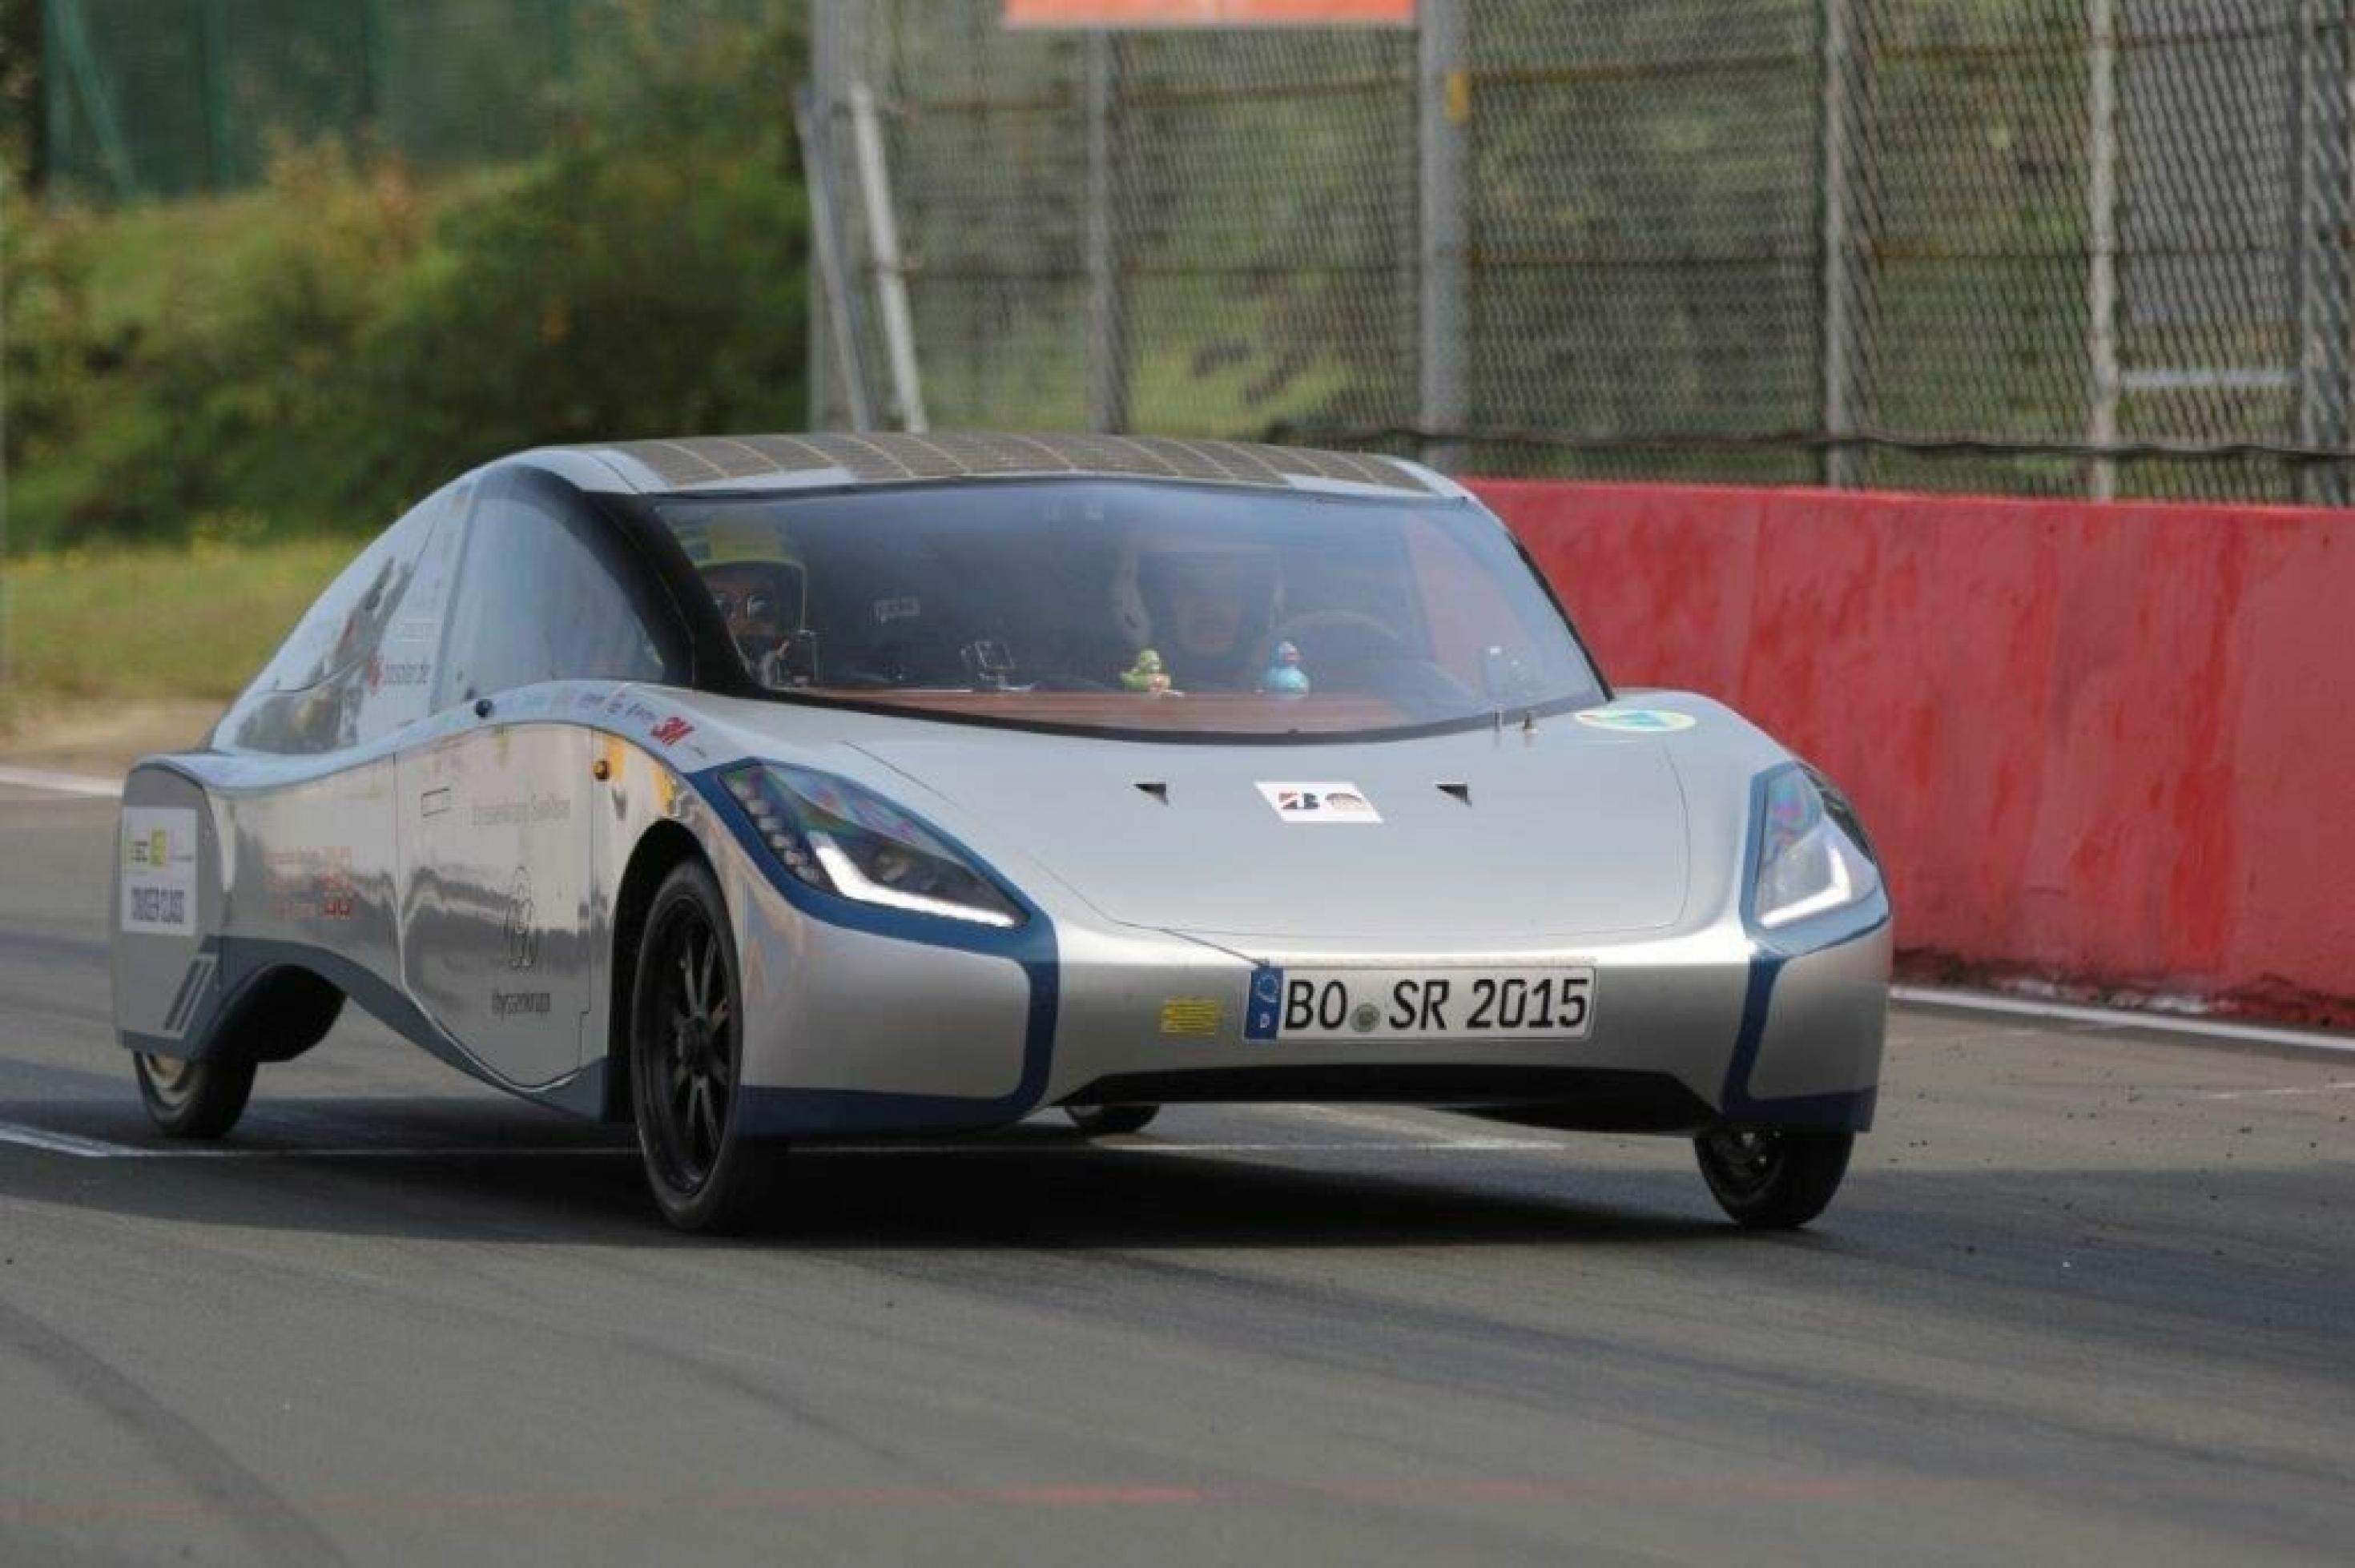 Sportliches Design: Der Sunriser aus Bochum wirkt wie ein moderner Sportwagen für mehrere Insassen, ist aber solargetrieben.